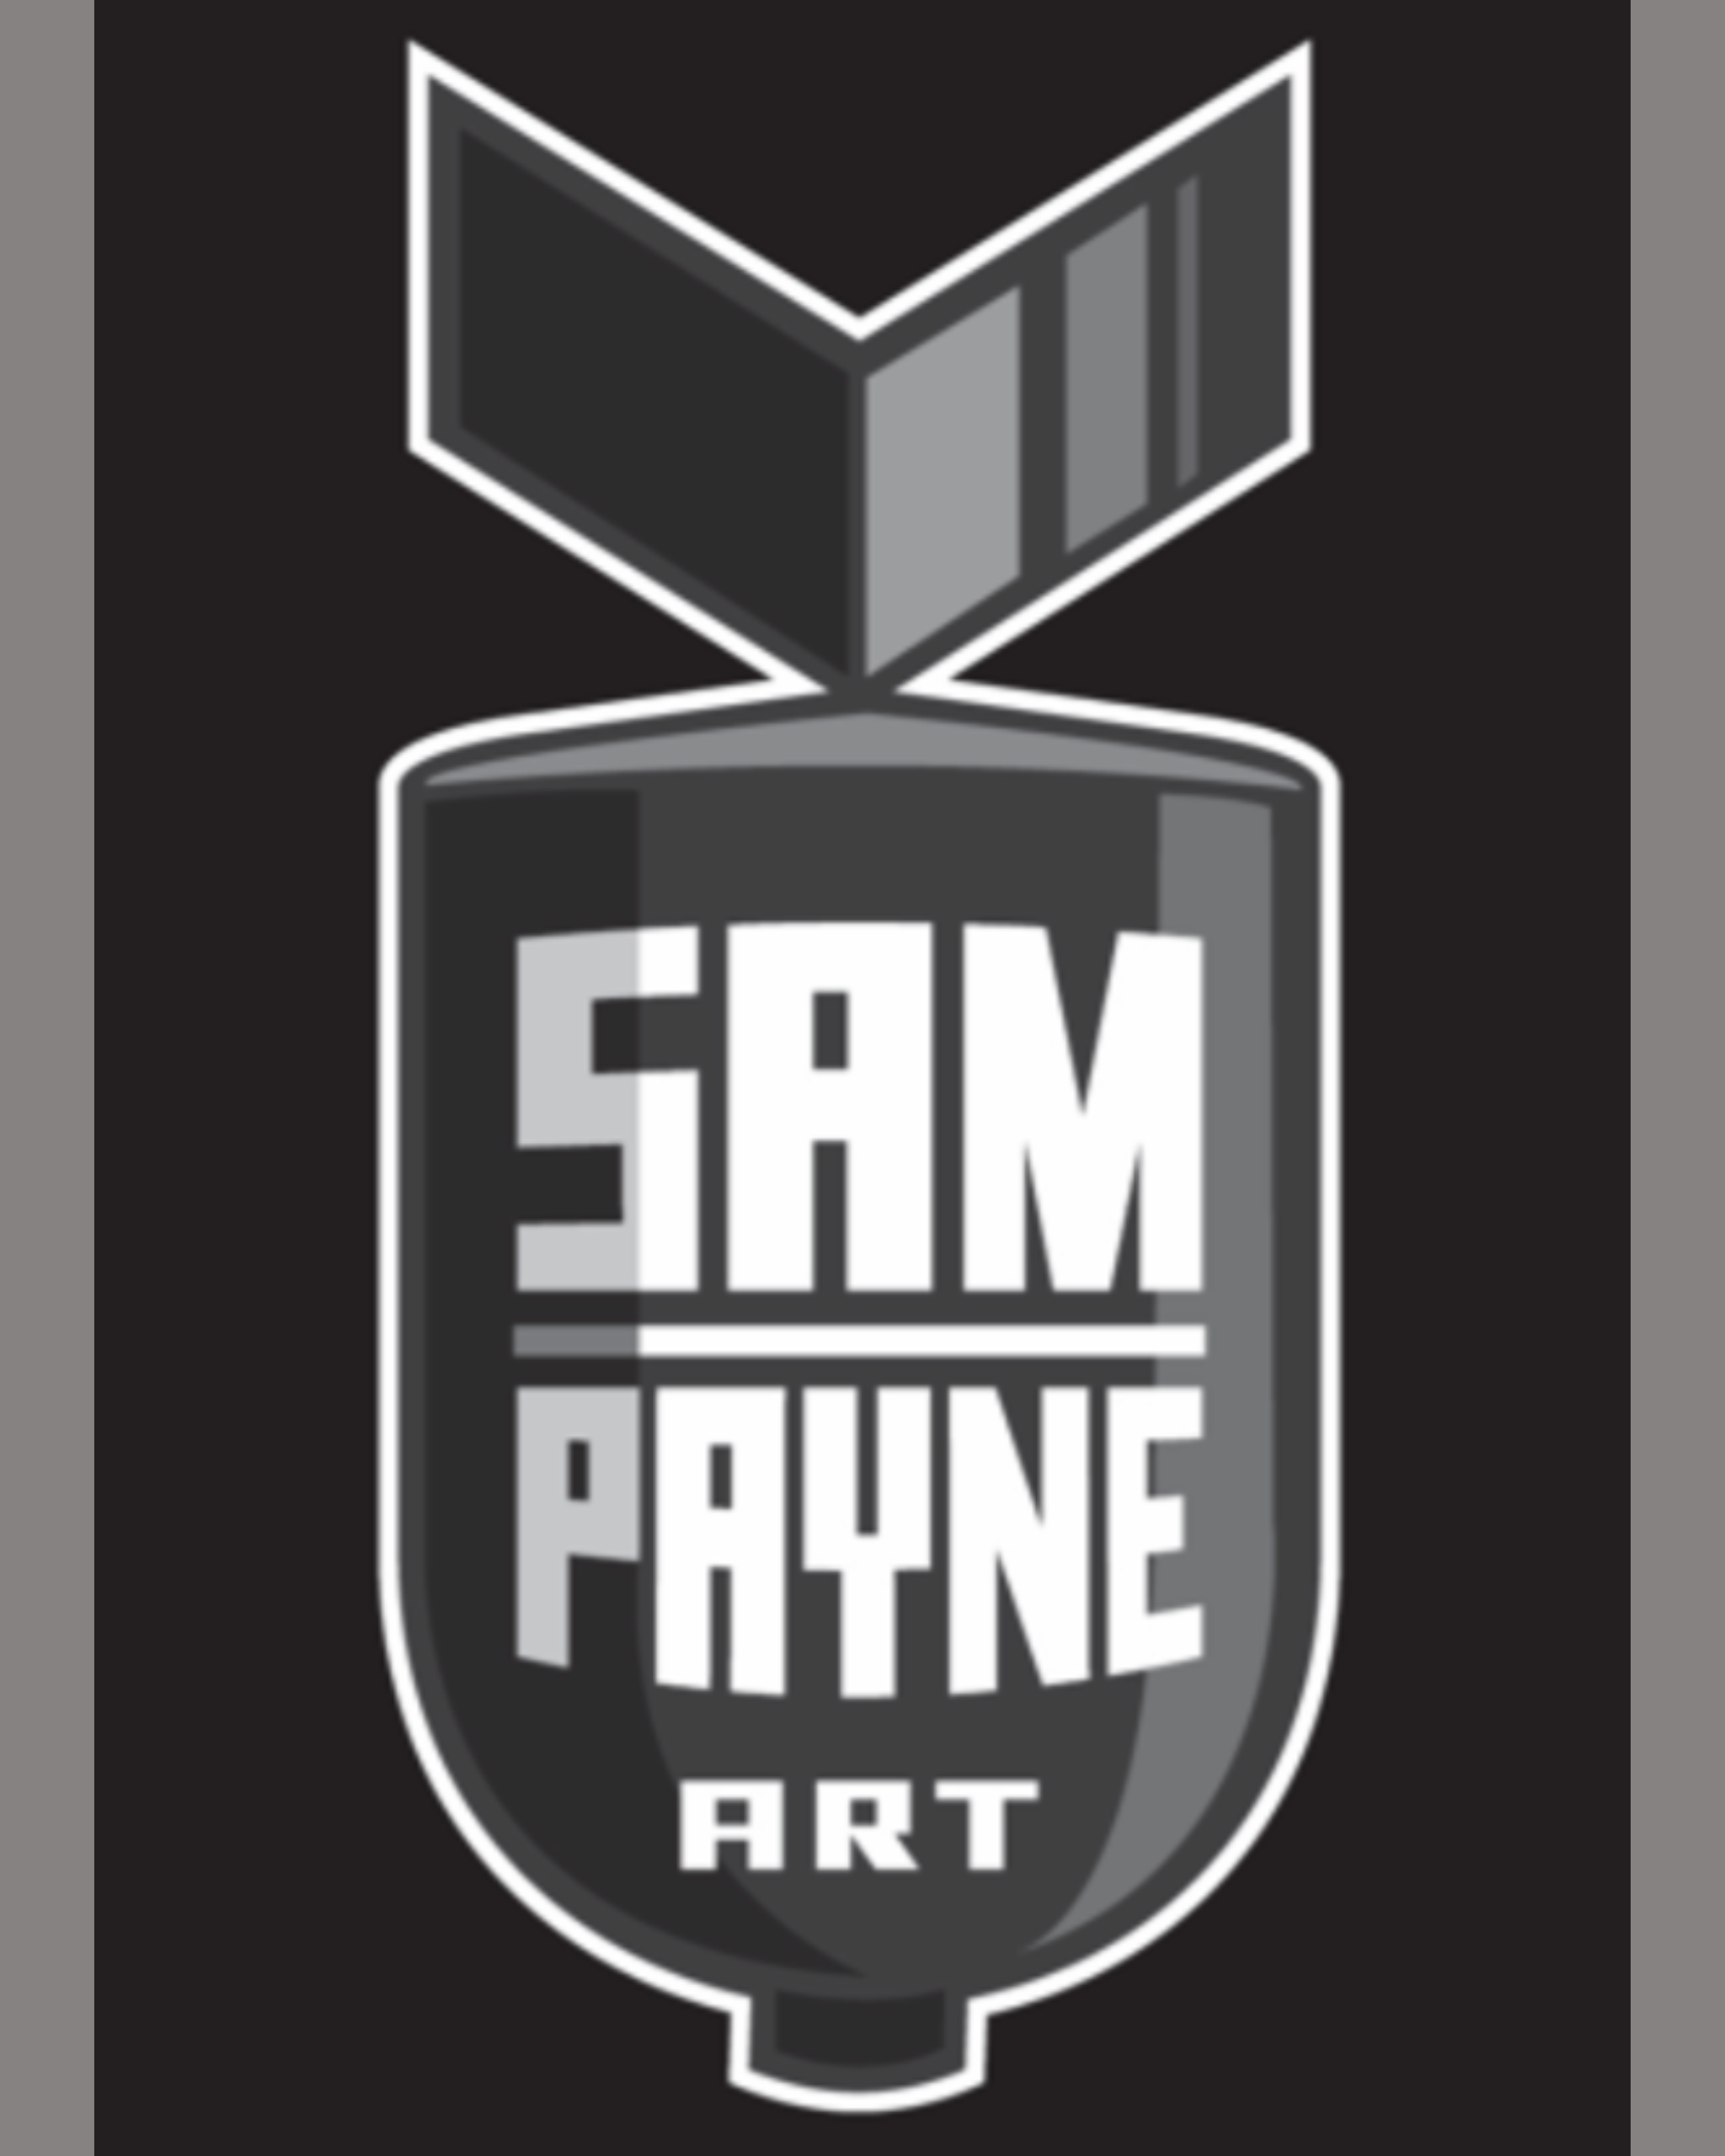 Sam Payne